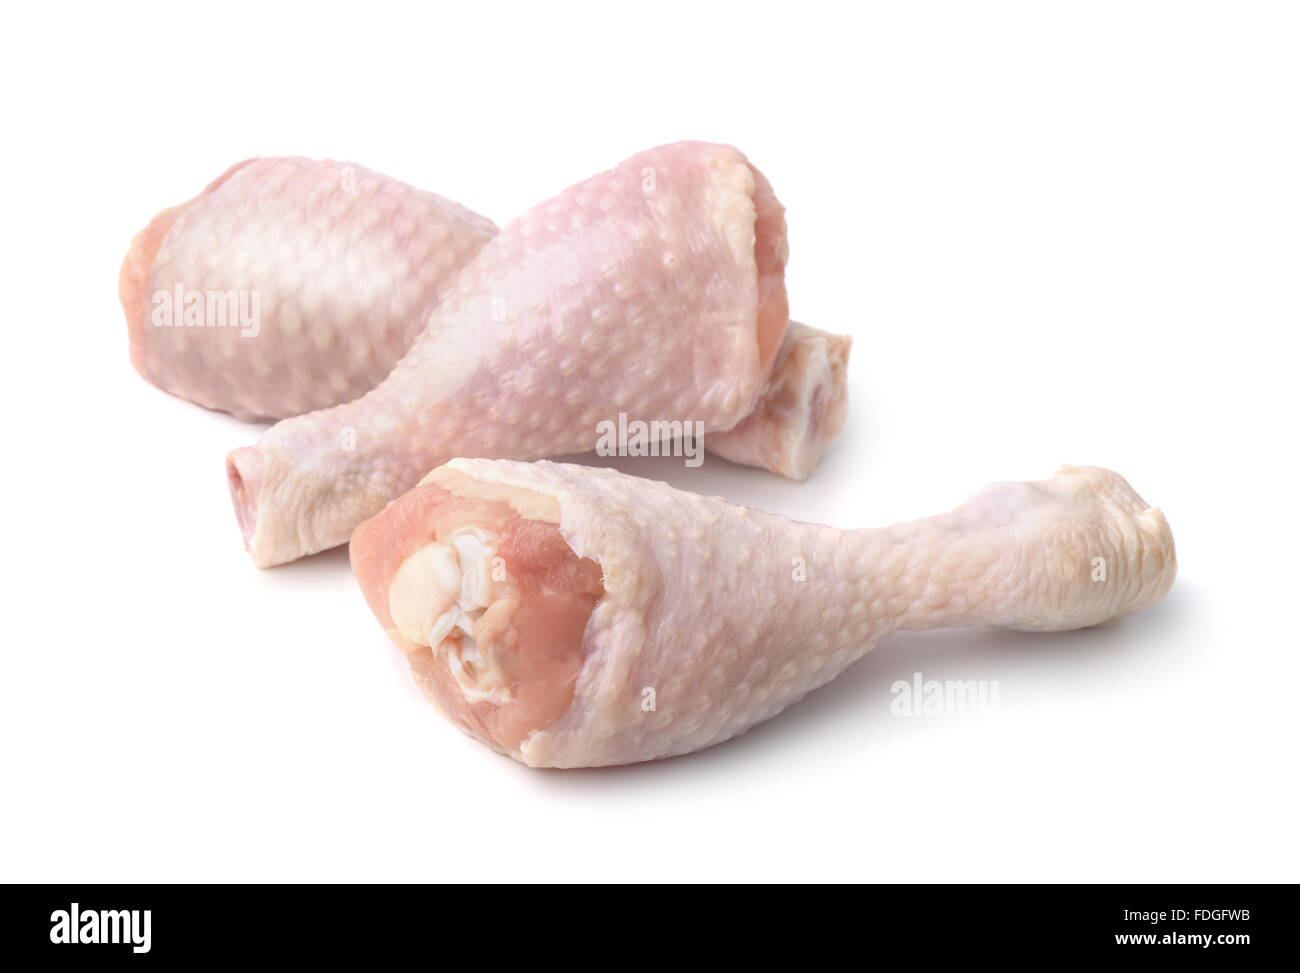 Pilons de poulet frais isolated on white Banque D'Images